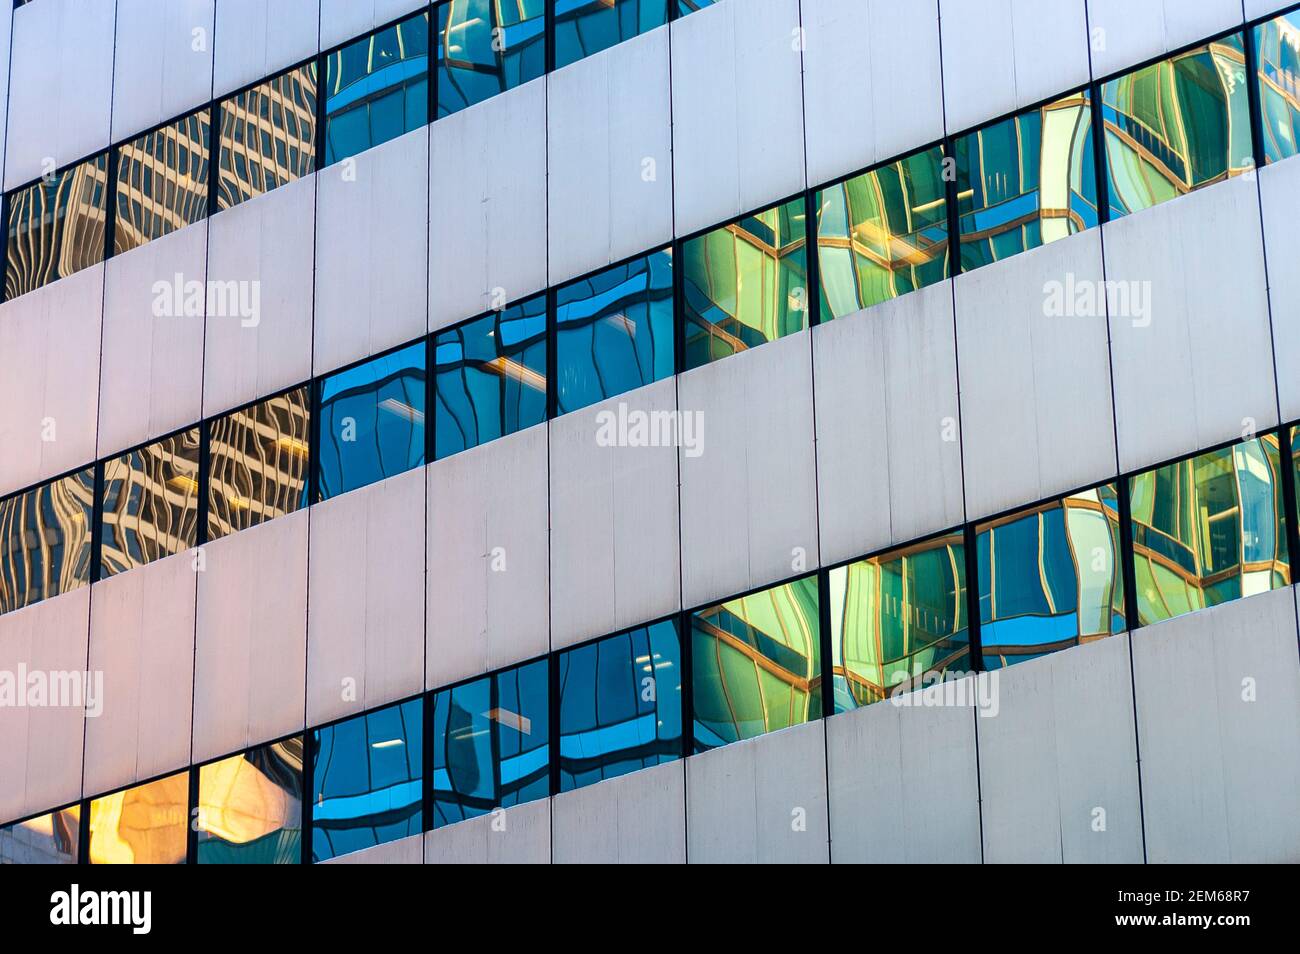 Detalles arquitectónicos de la fachada del edificio con interesantes reflejos de luz y ventanas. Foto de stock